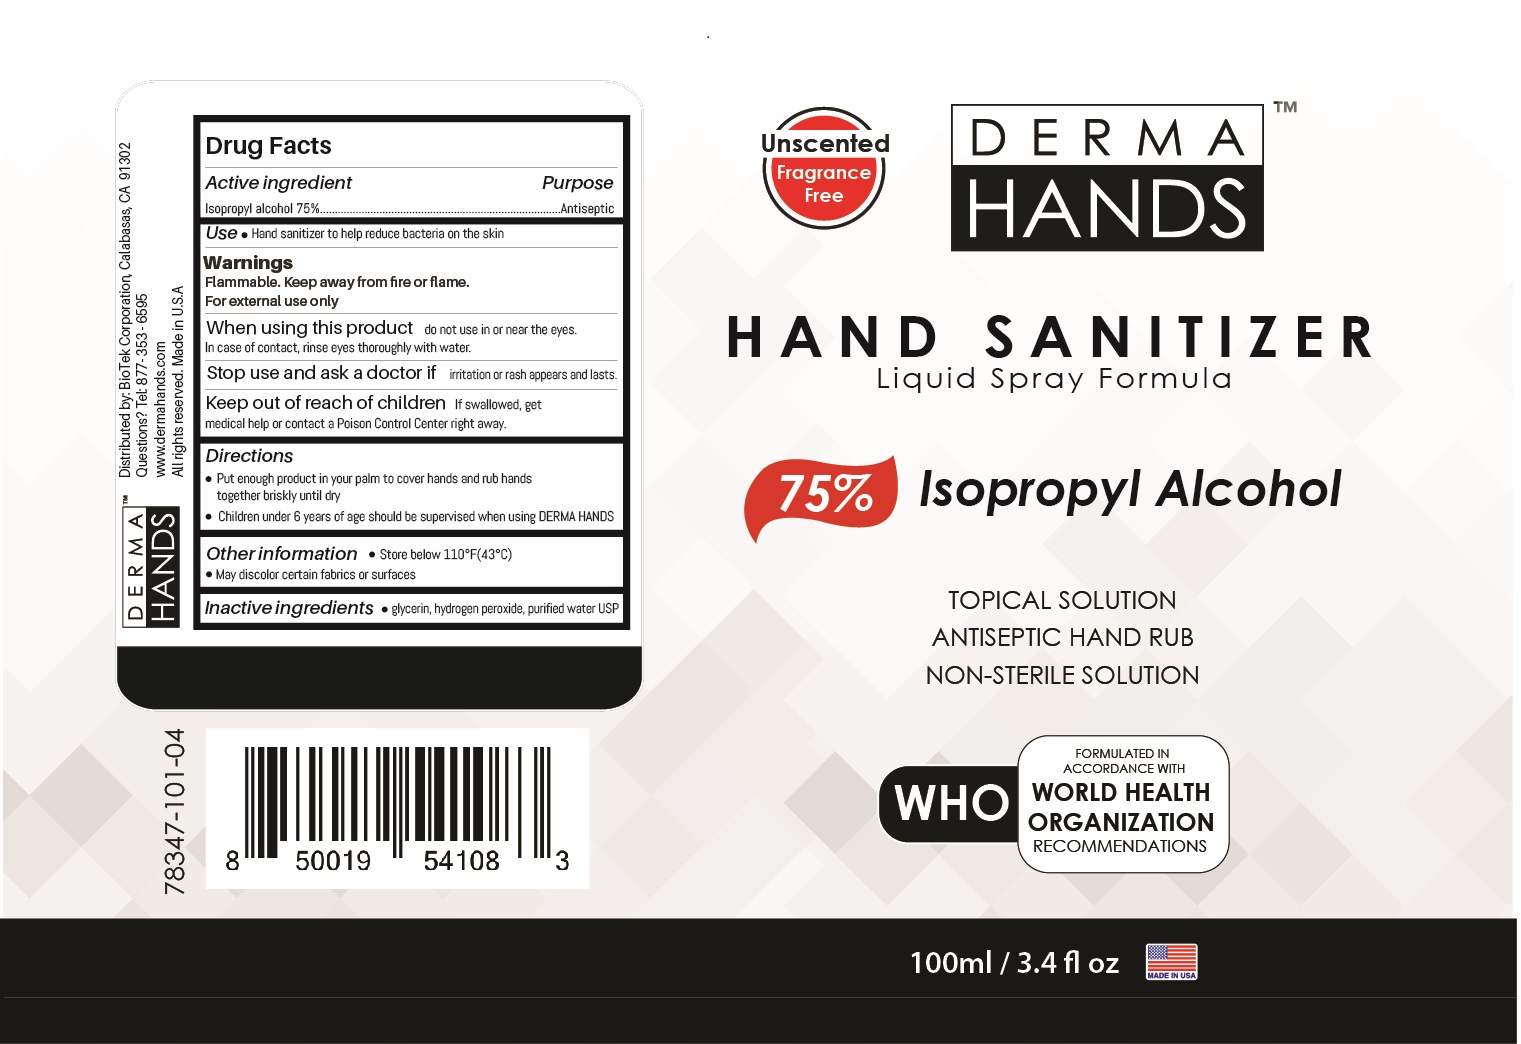 Derma Hands Hand Sanitizer